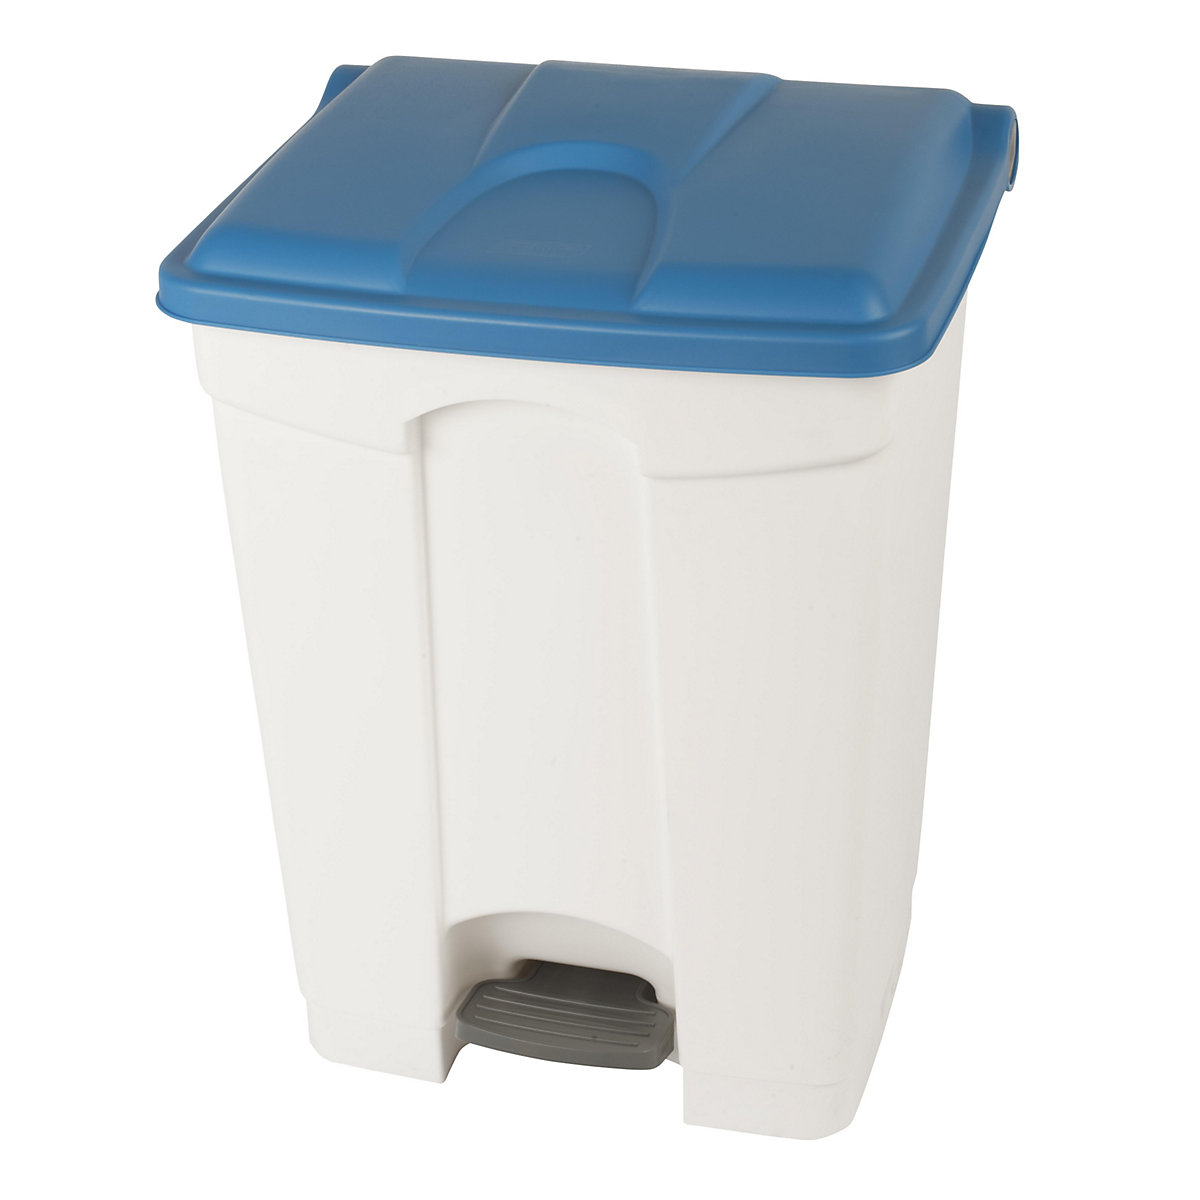 Coletor de lixo com pedal, volume 70 l, LxAxP 505 x 675 x 415 mm, branco, tampa azul-5